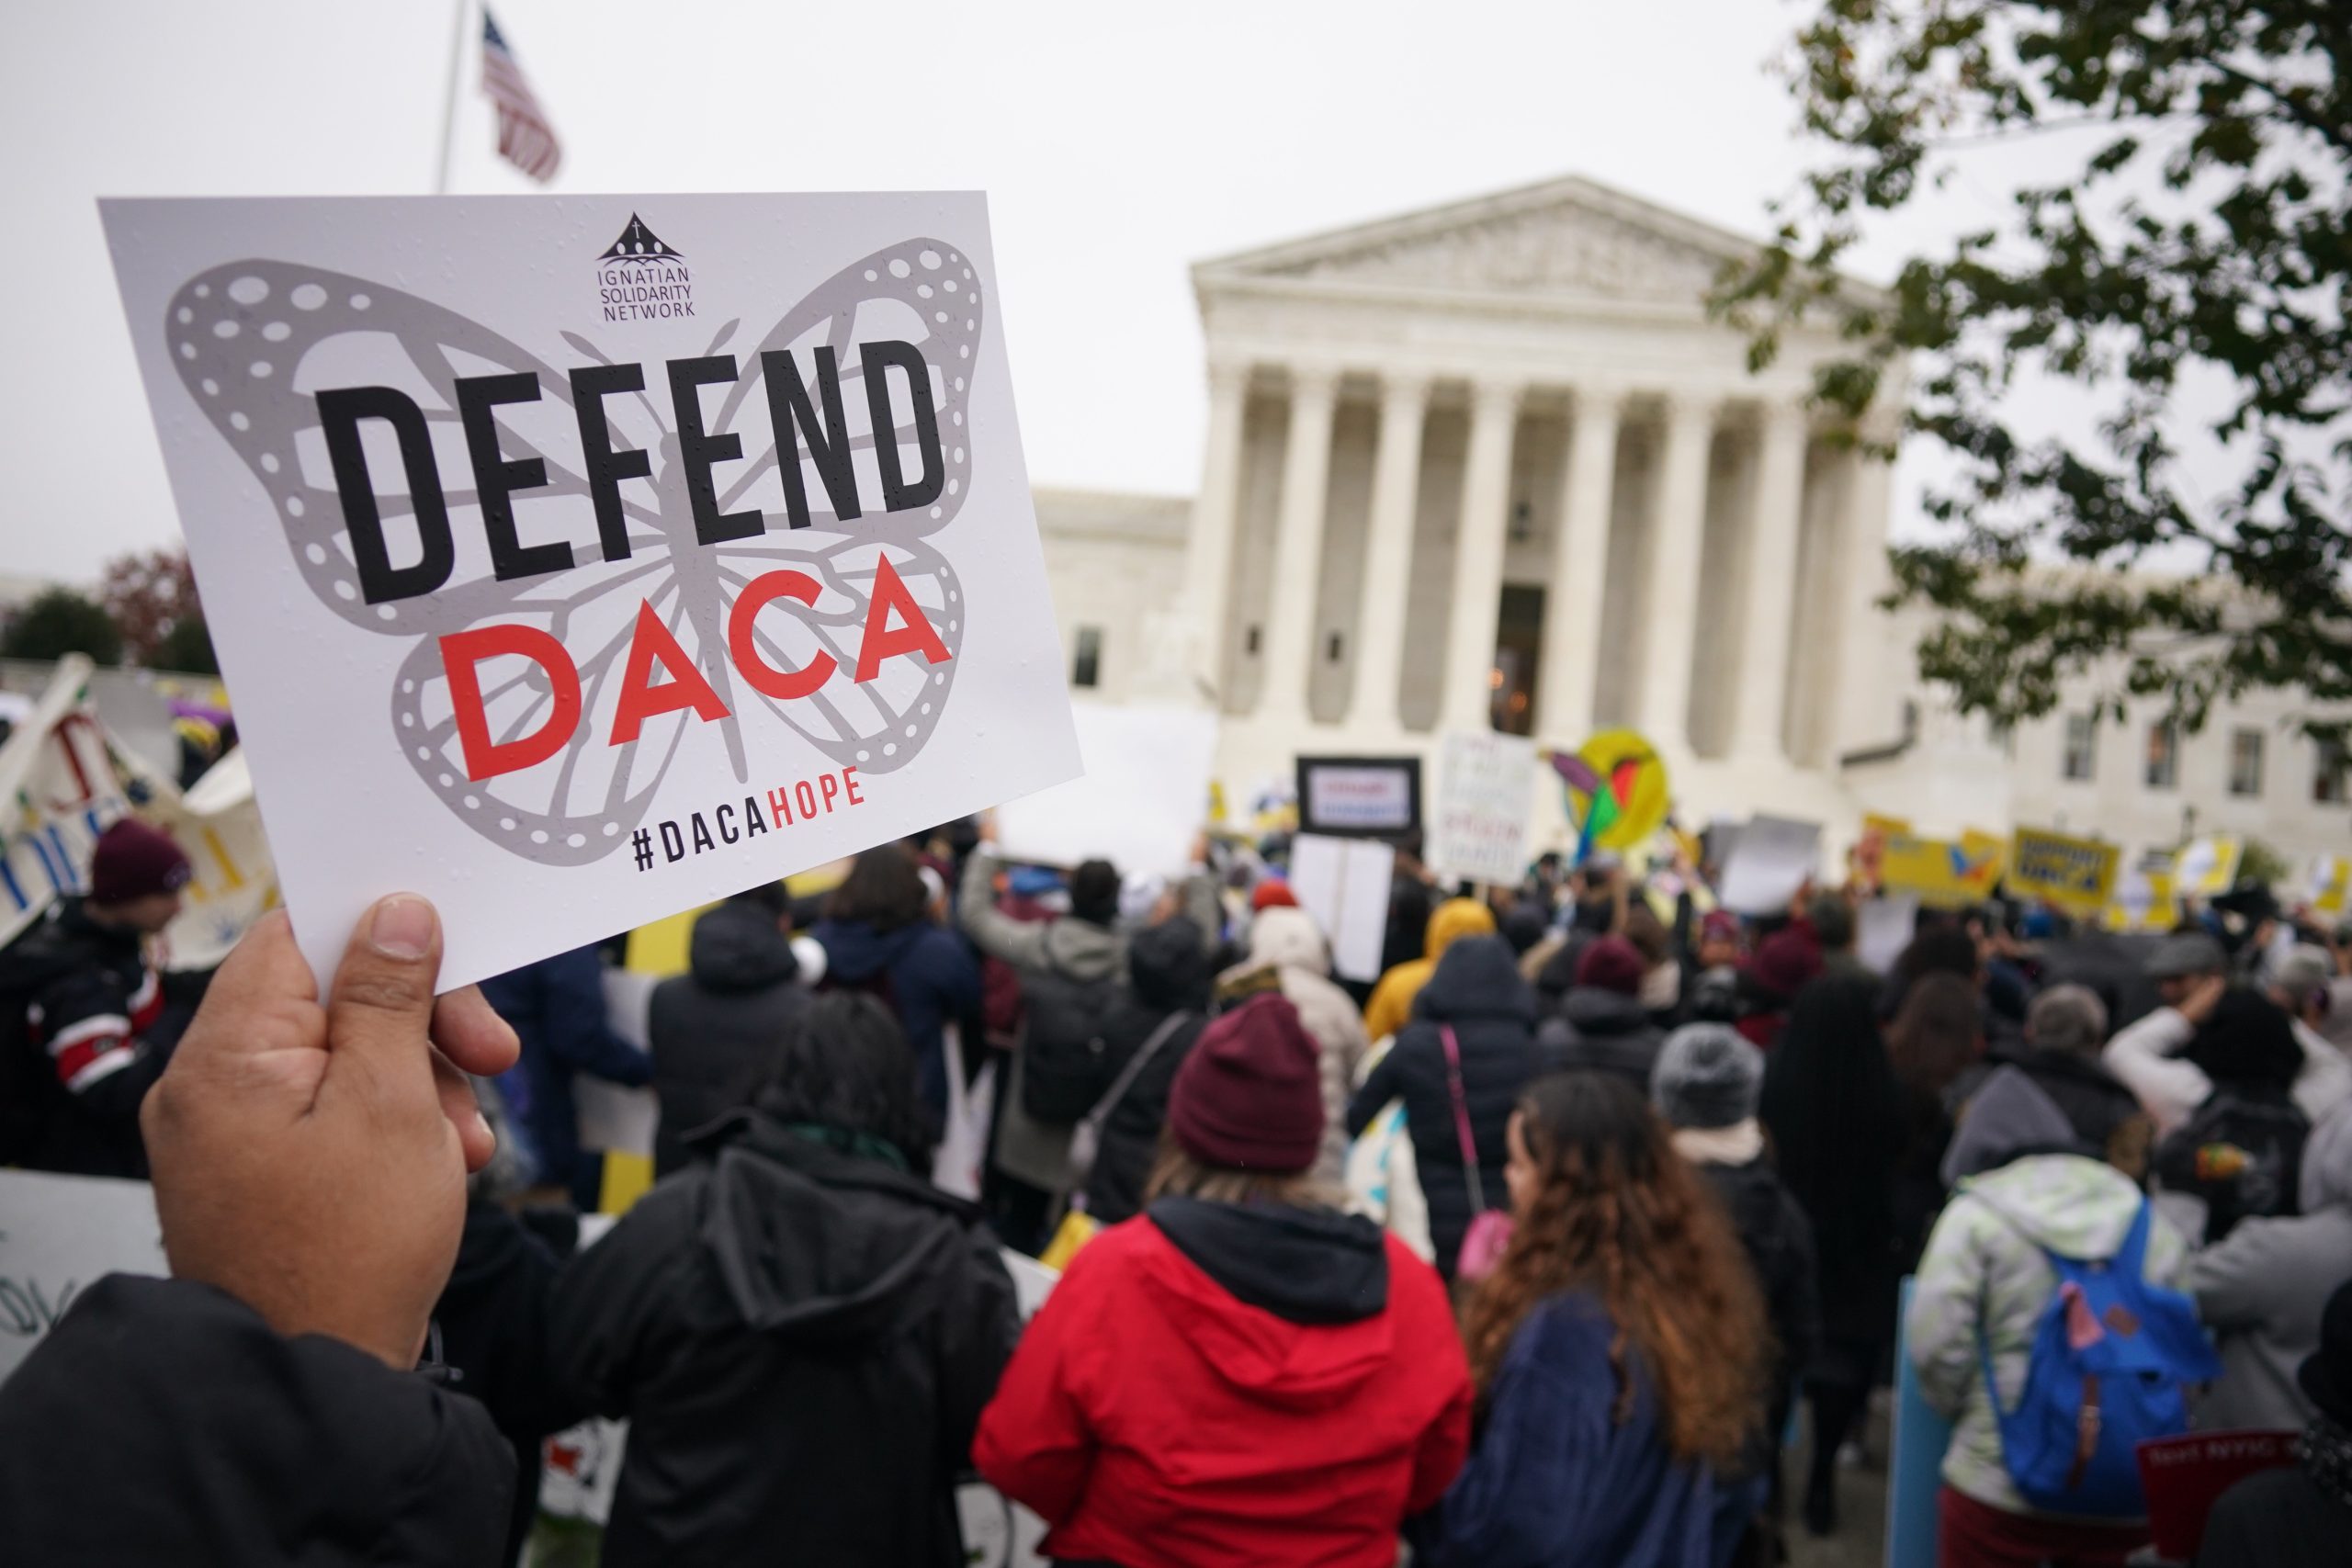 Nueve estados republicanos piden que se anule el programa DACA, que da protección a unos 600,000 dreamers